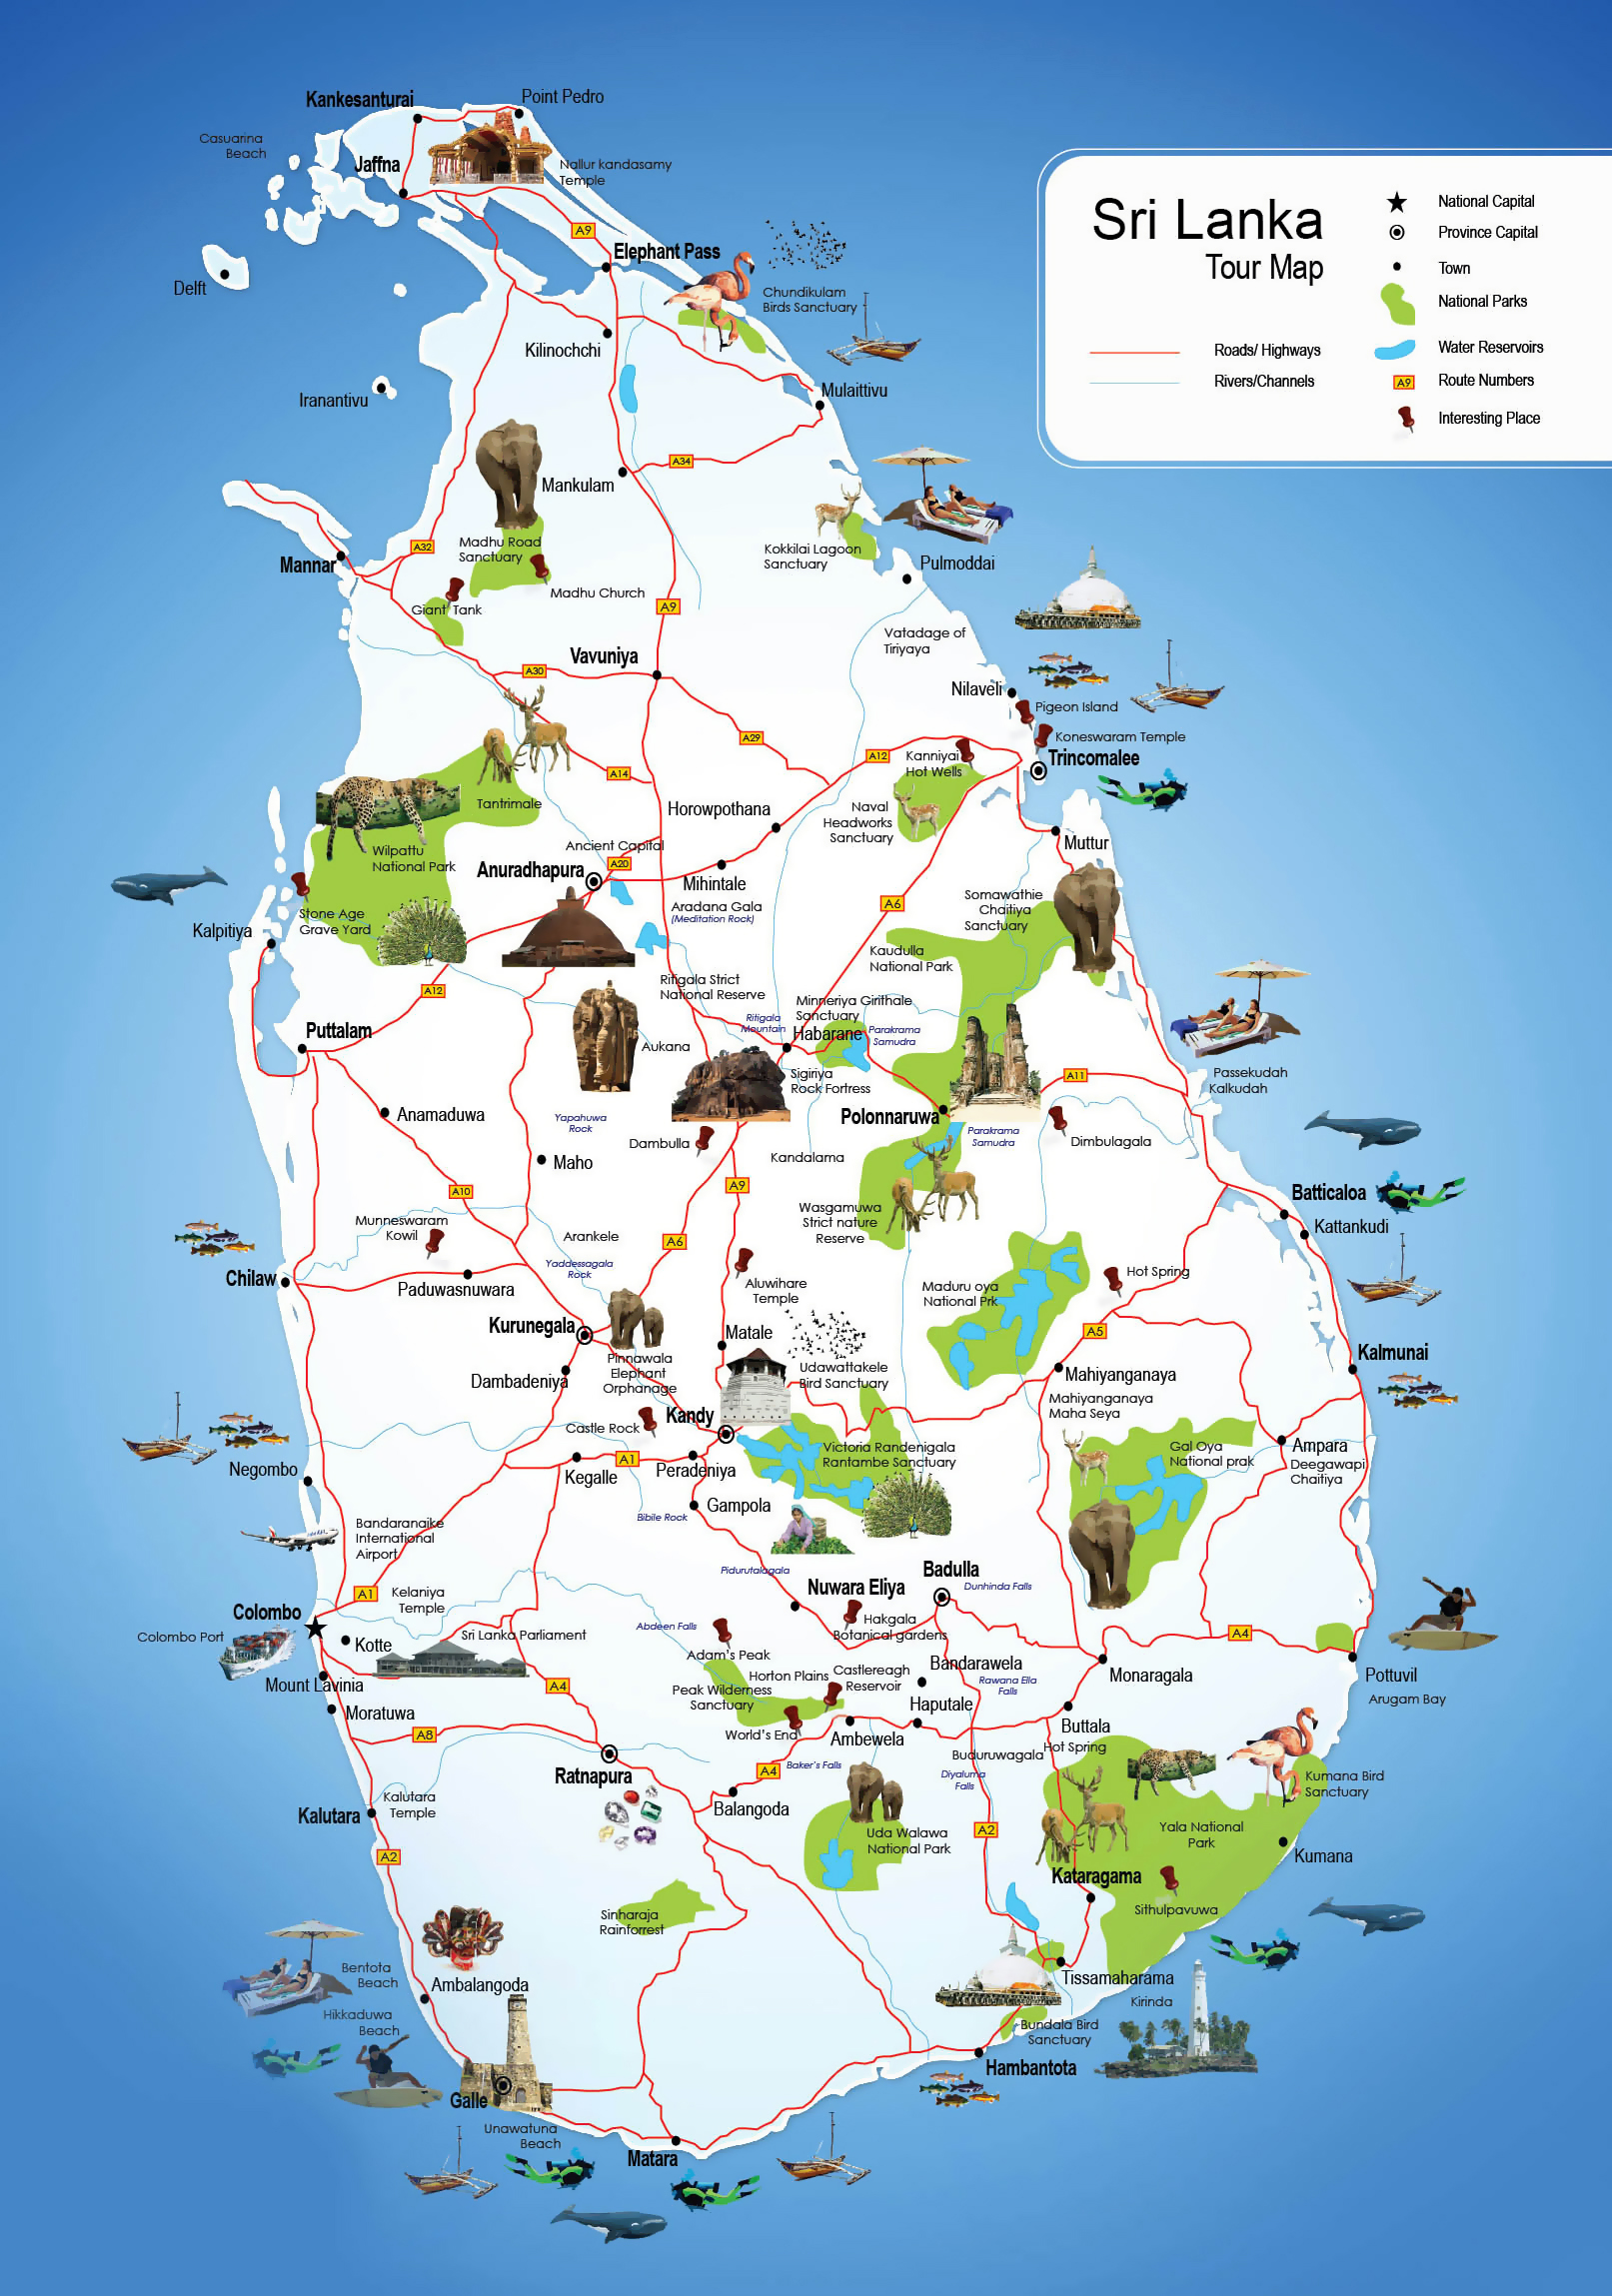 Grande detallado mapa turístico de Sri Lanka | Sri Lanka | Asia | Mapas